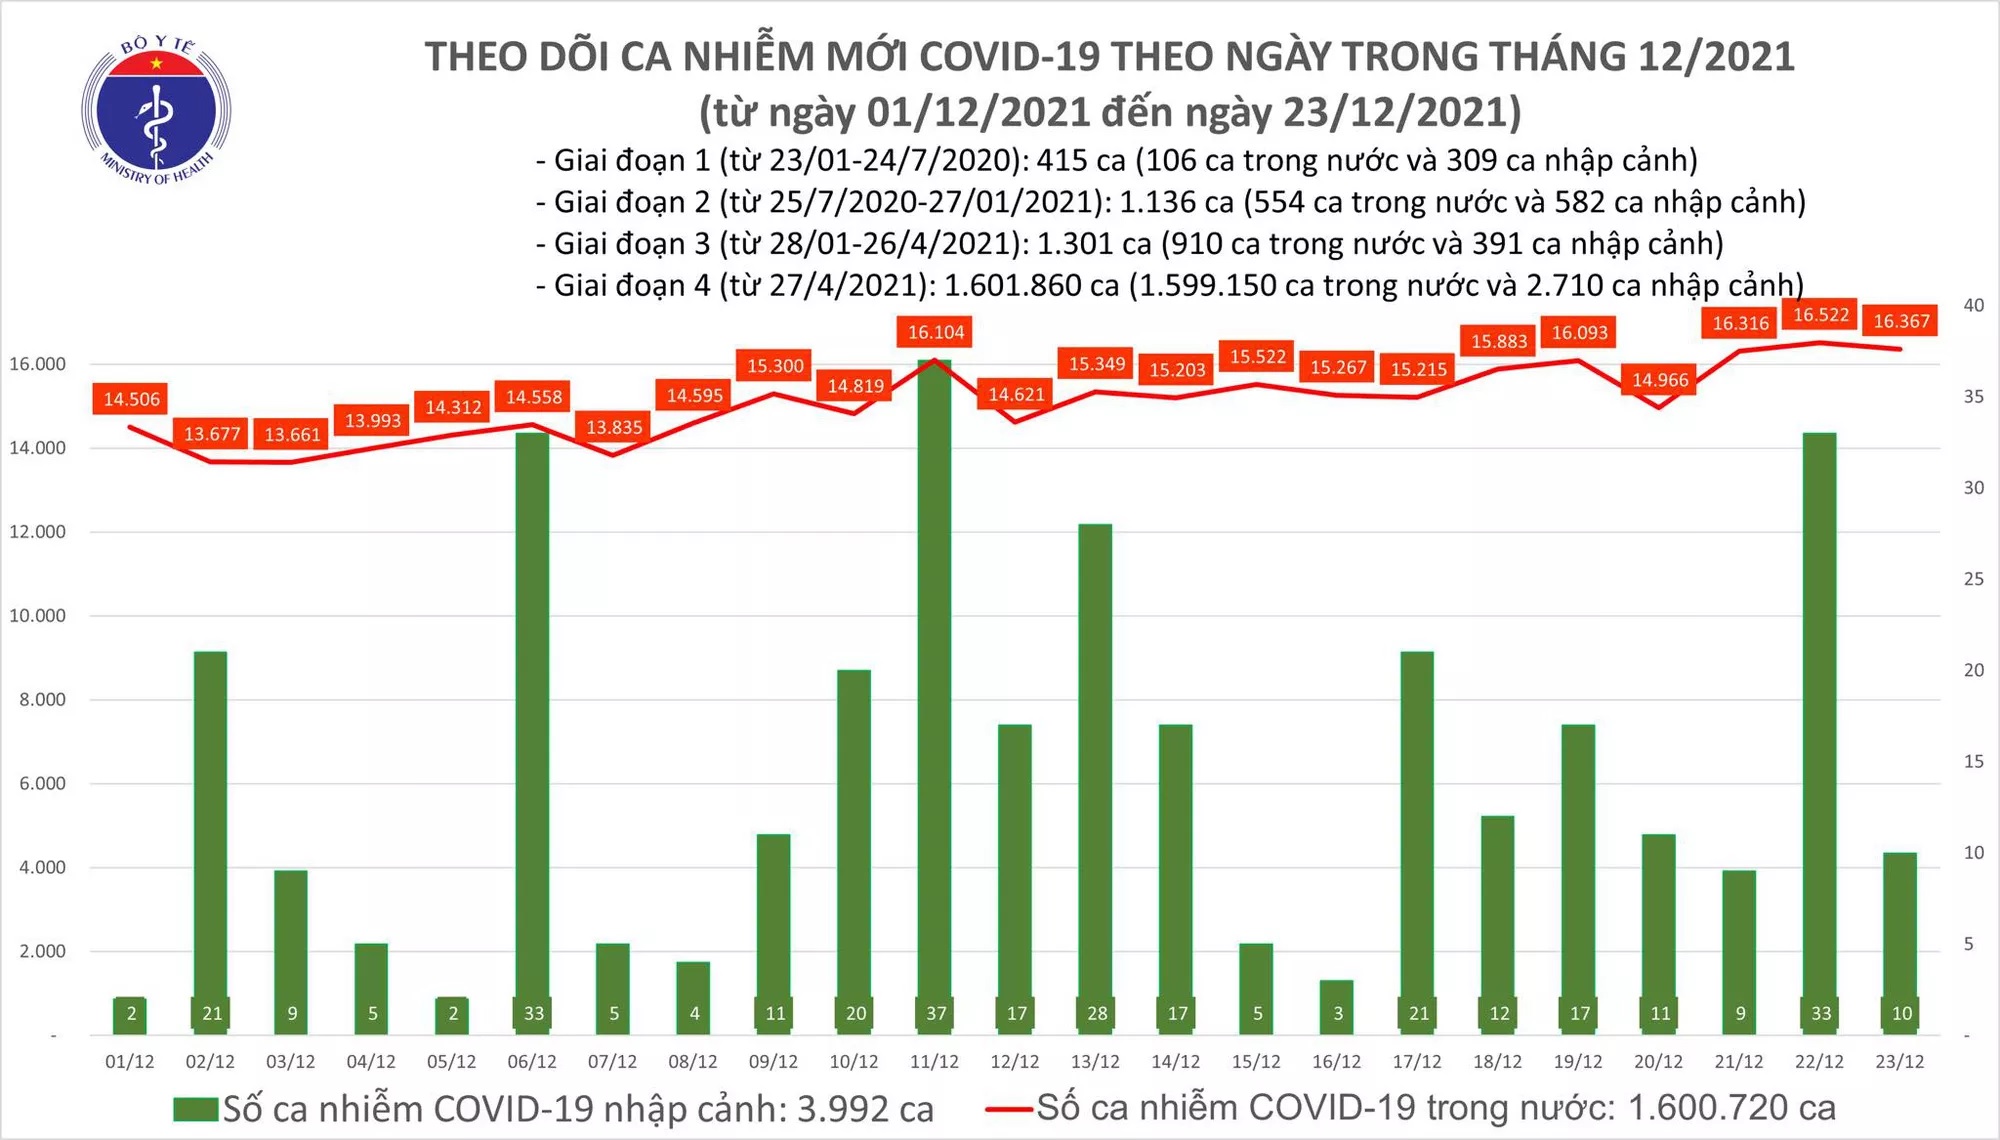 Ngày 23/12: Có 16.377 ca COVID-19, Hà Nội vẫn tiếp tục nhiều nhất cả nước với 1.774 ca